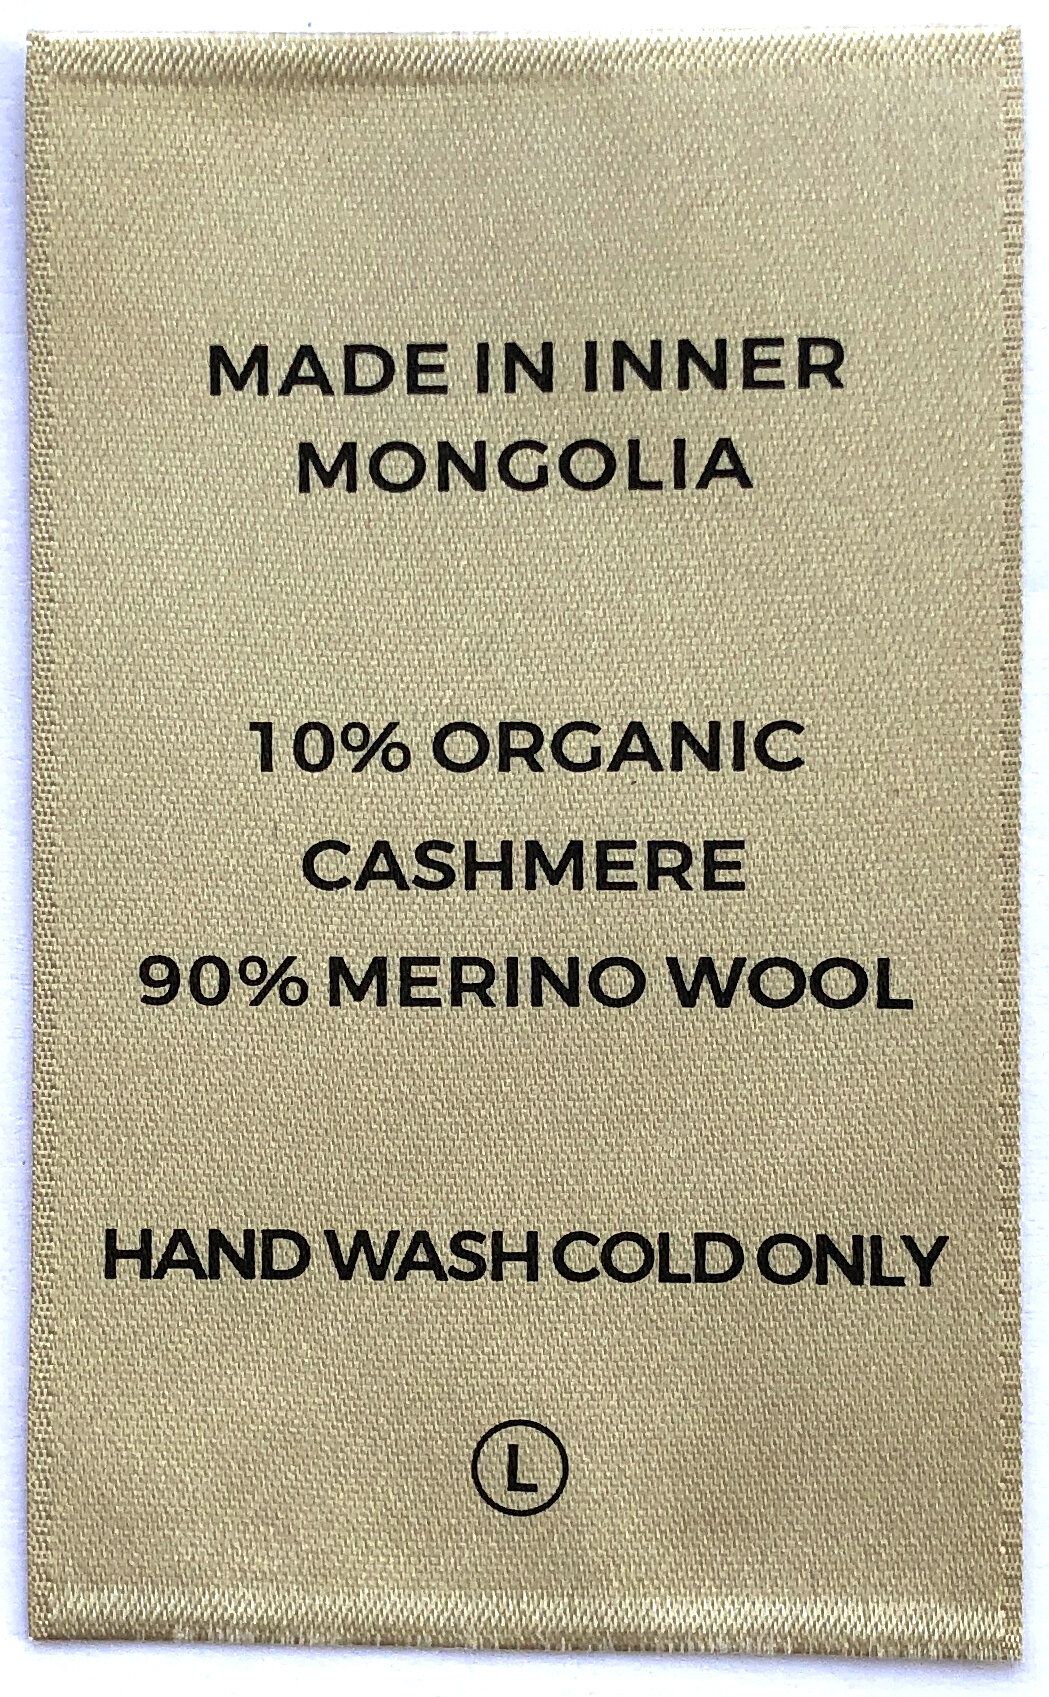 cahsmere coats labels (2).JPG